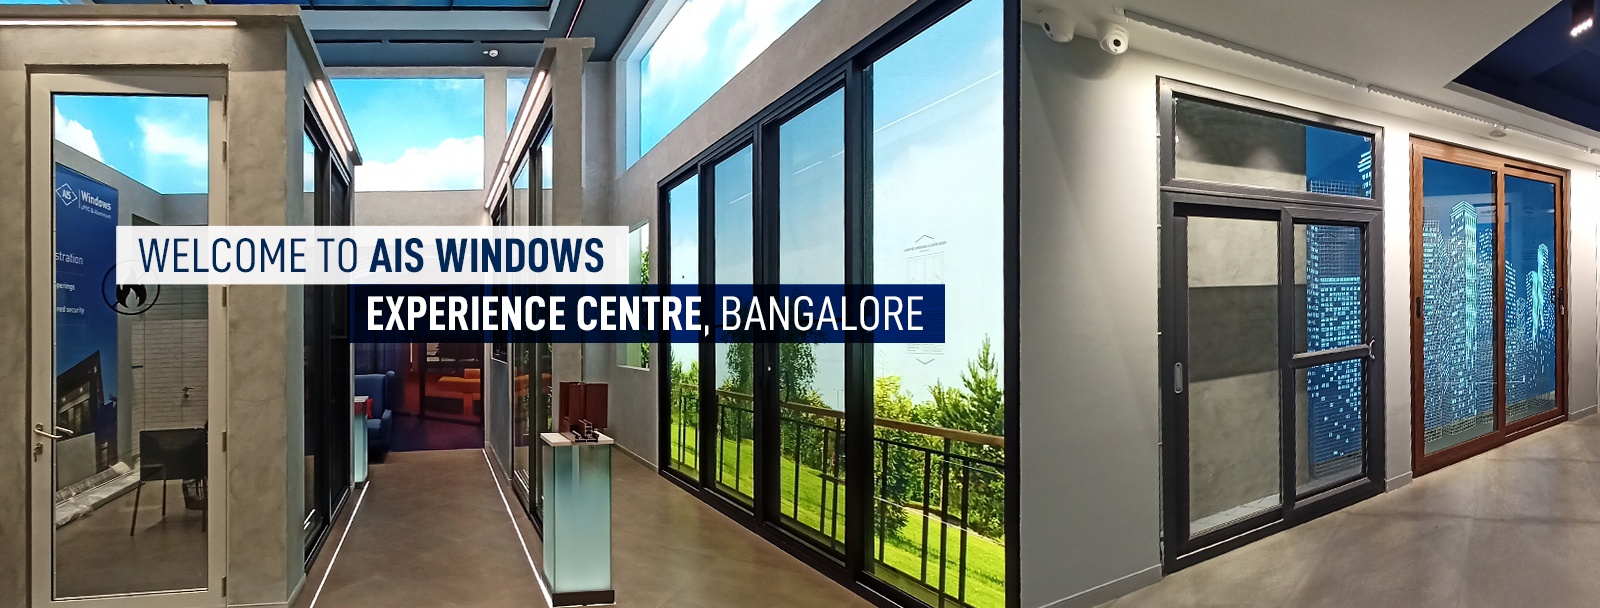 AIS Windows Experience Centre Bengalore